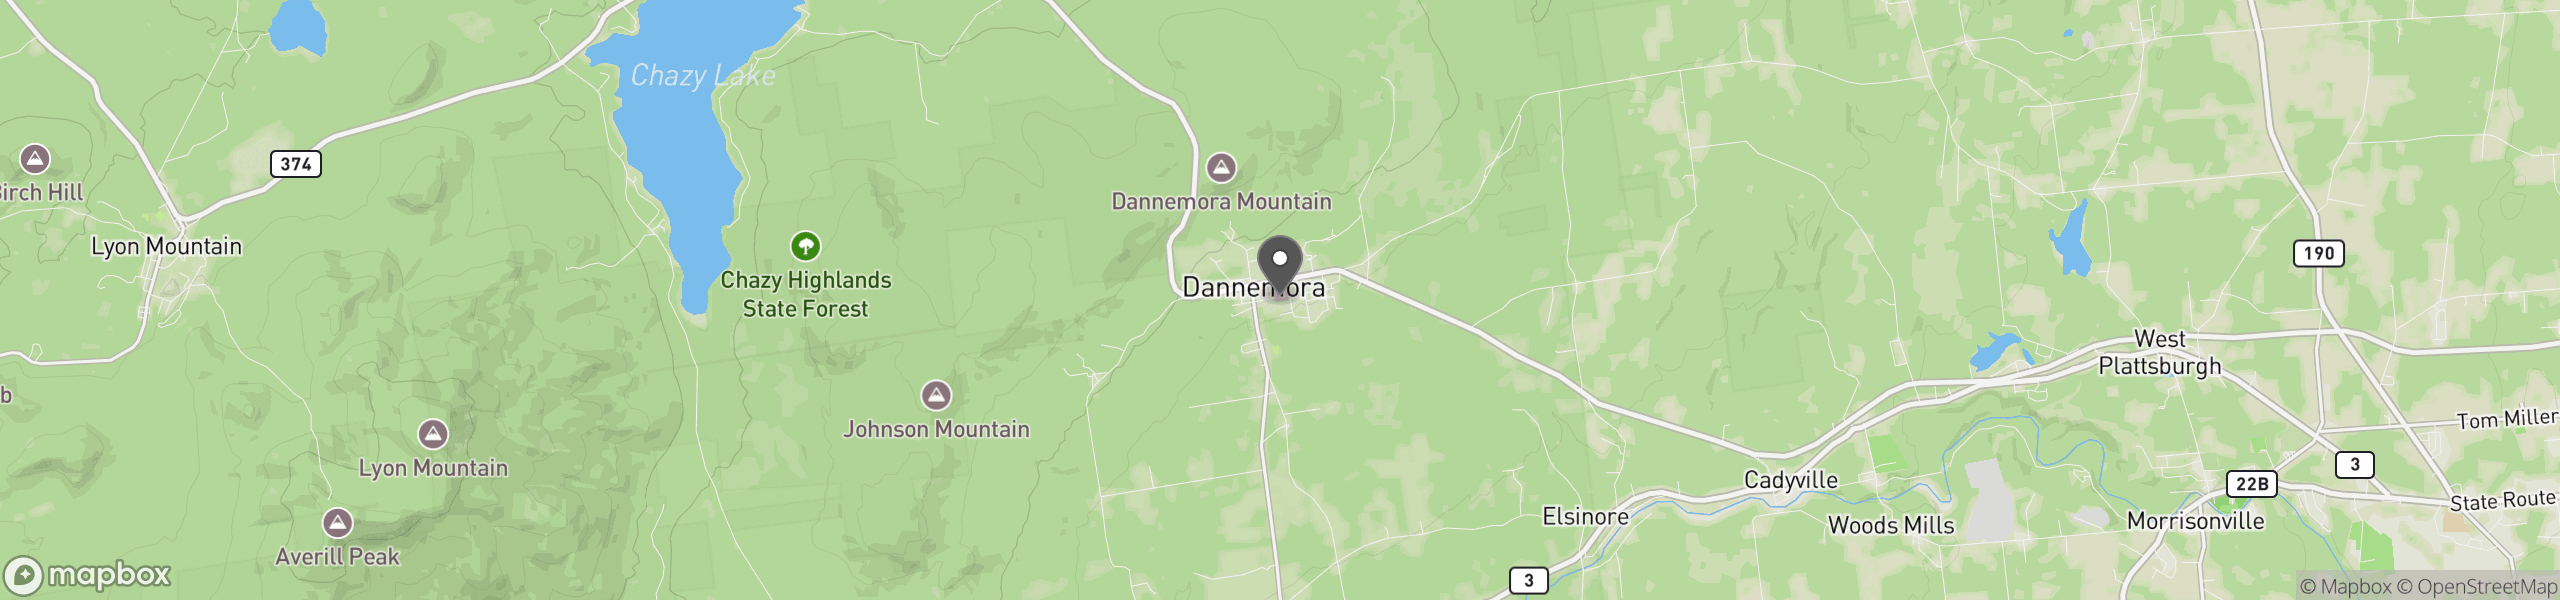 Dannemora, NY 12929